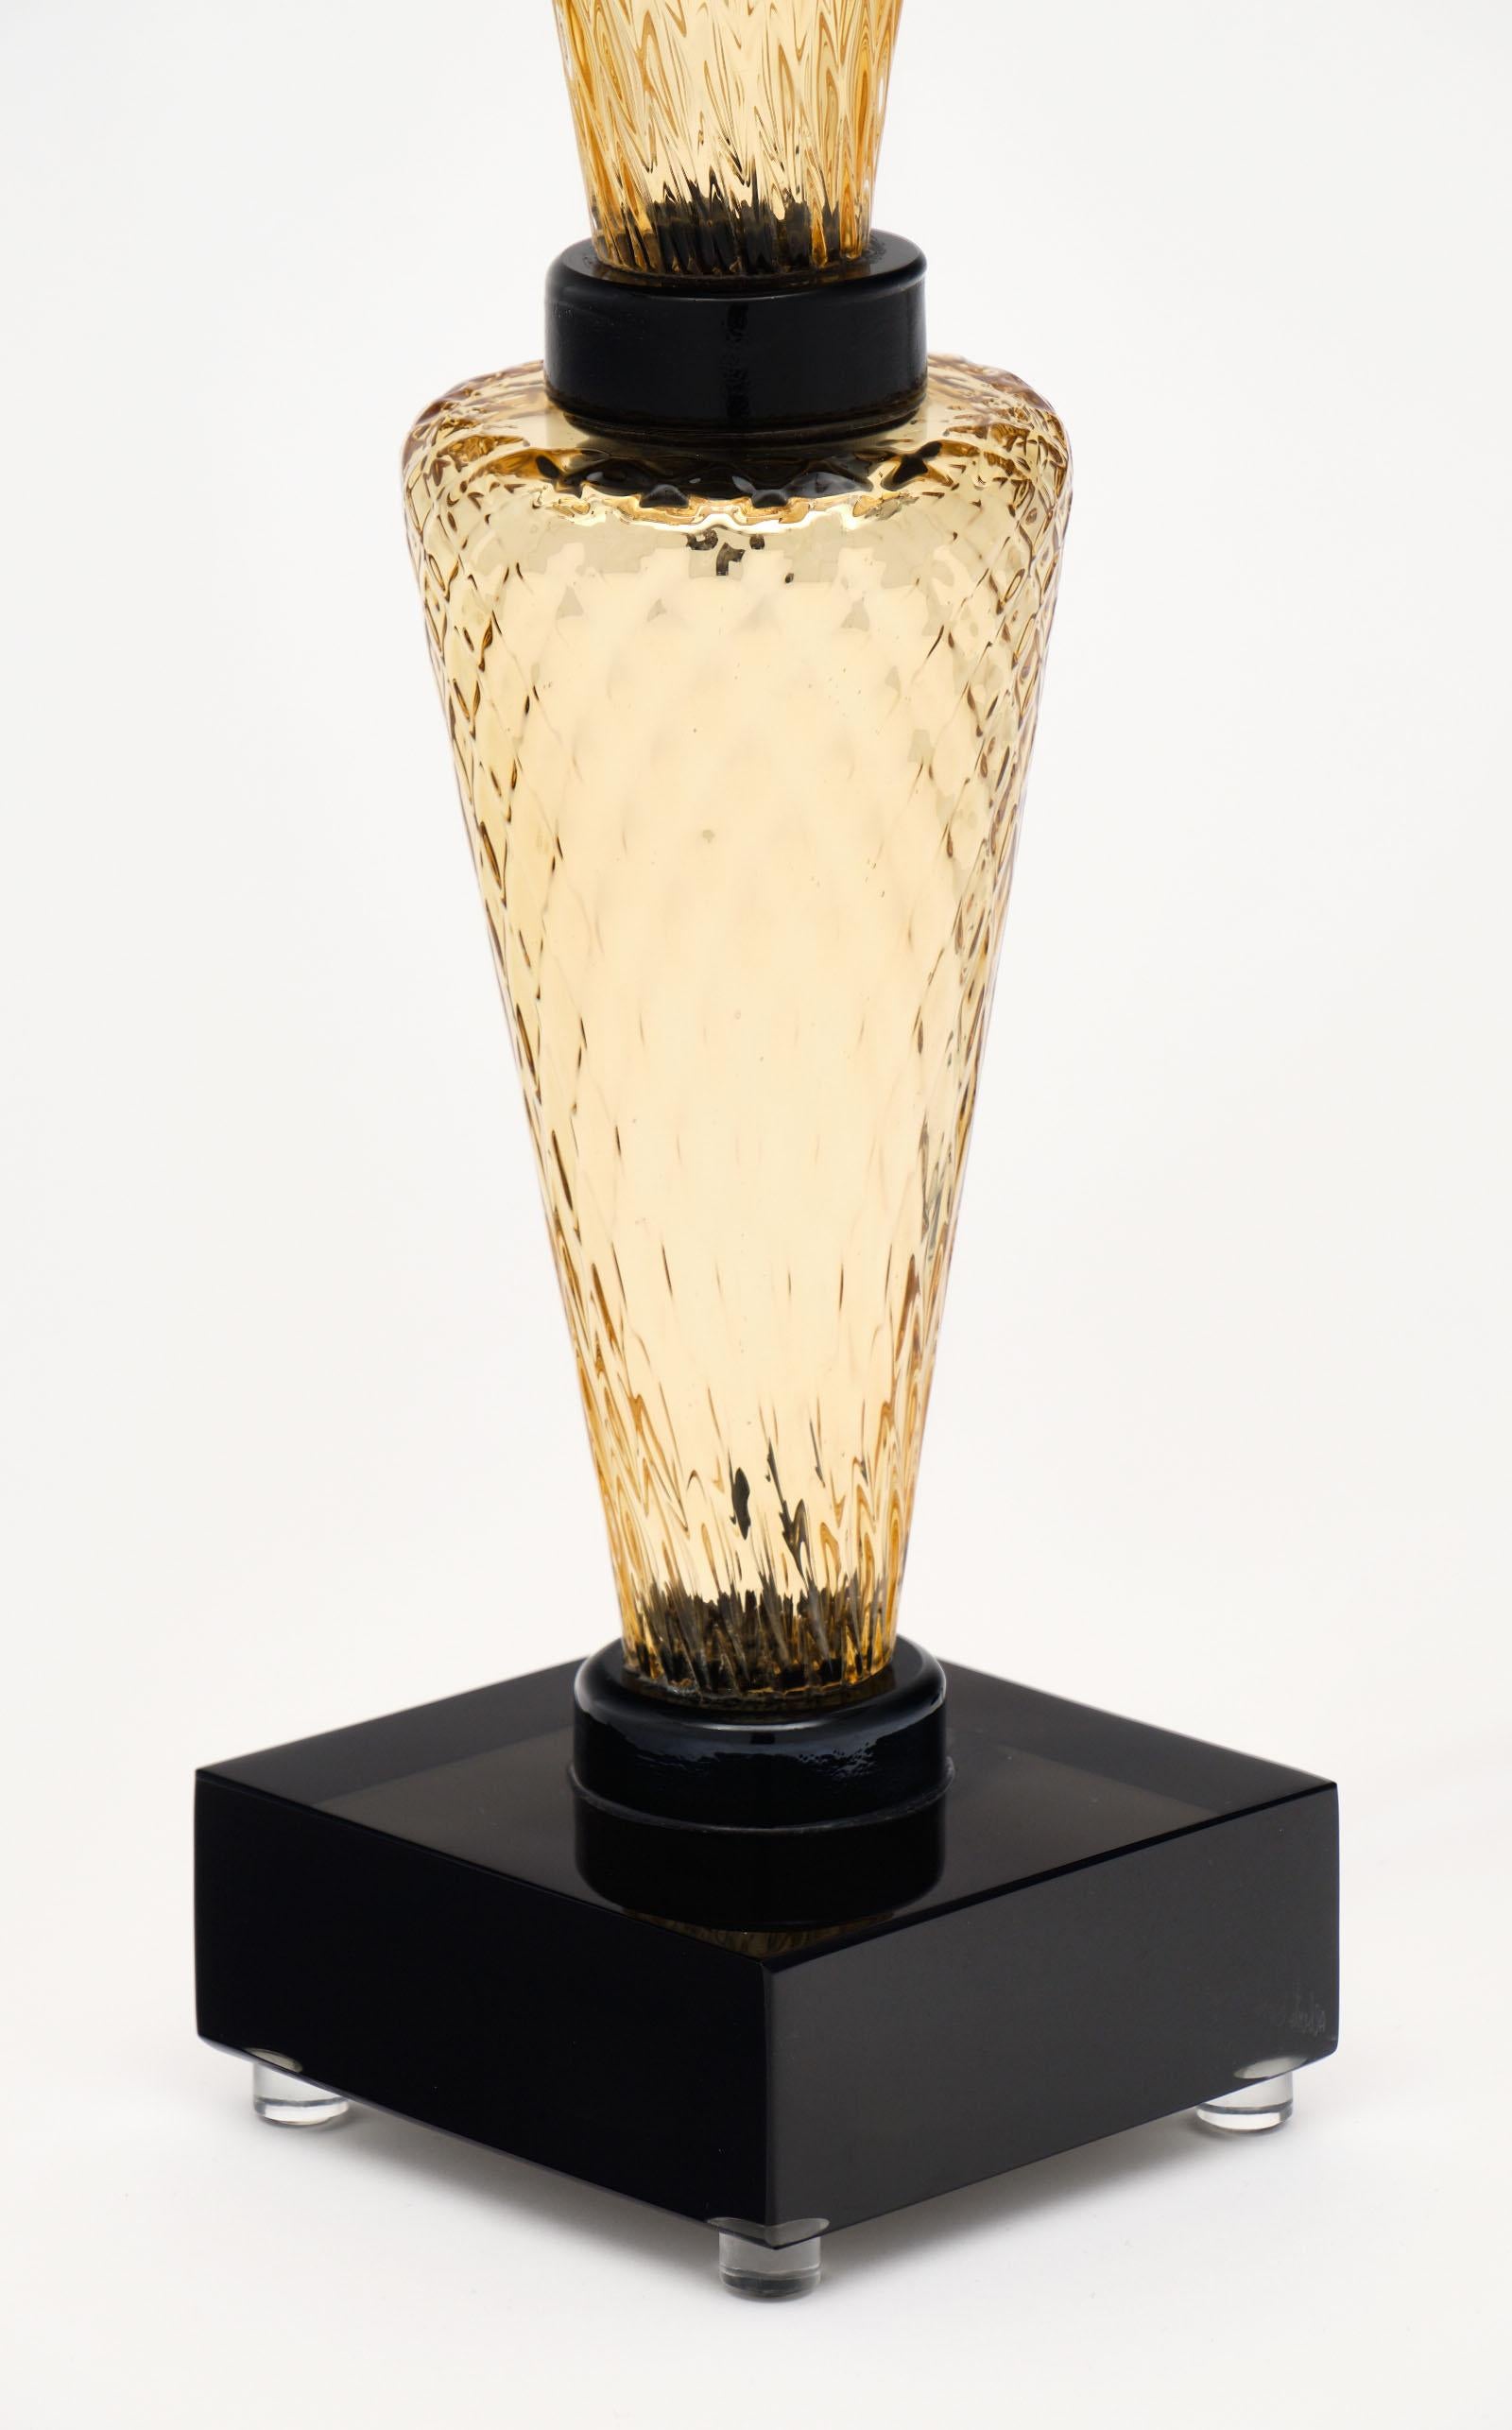 Gold and Black Murano Glass “Specchiato” Lamps For Sale 2